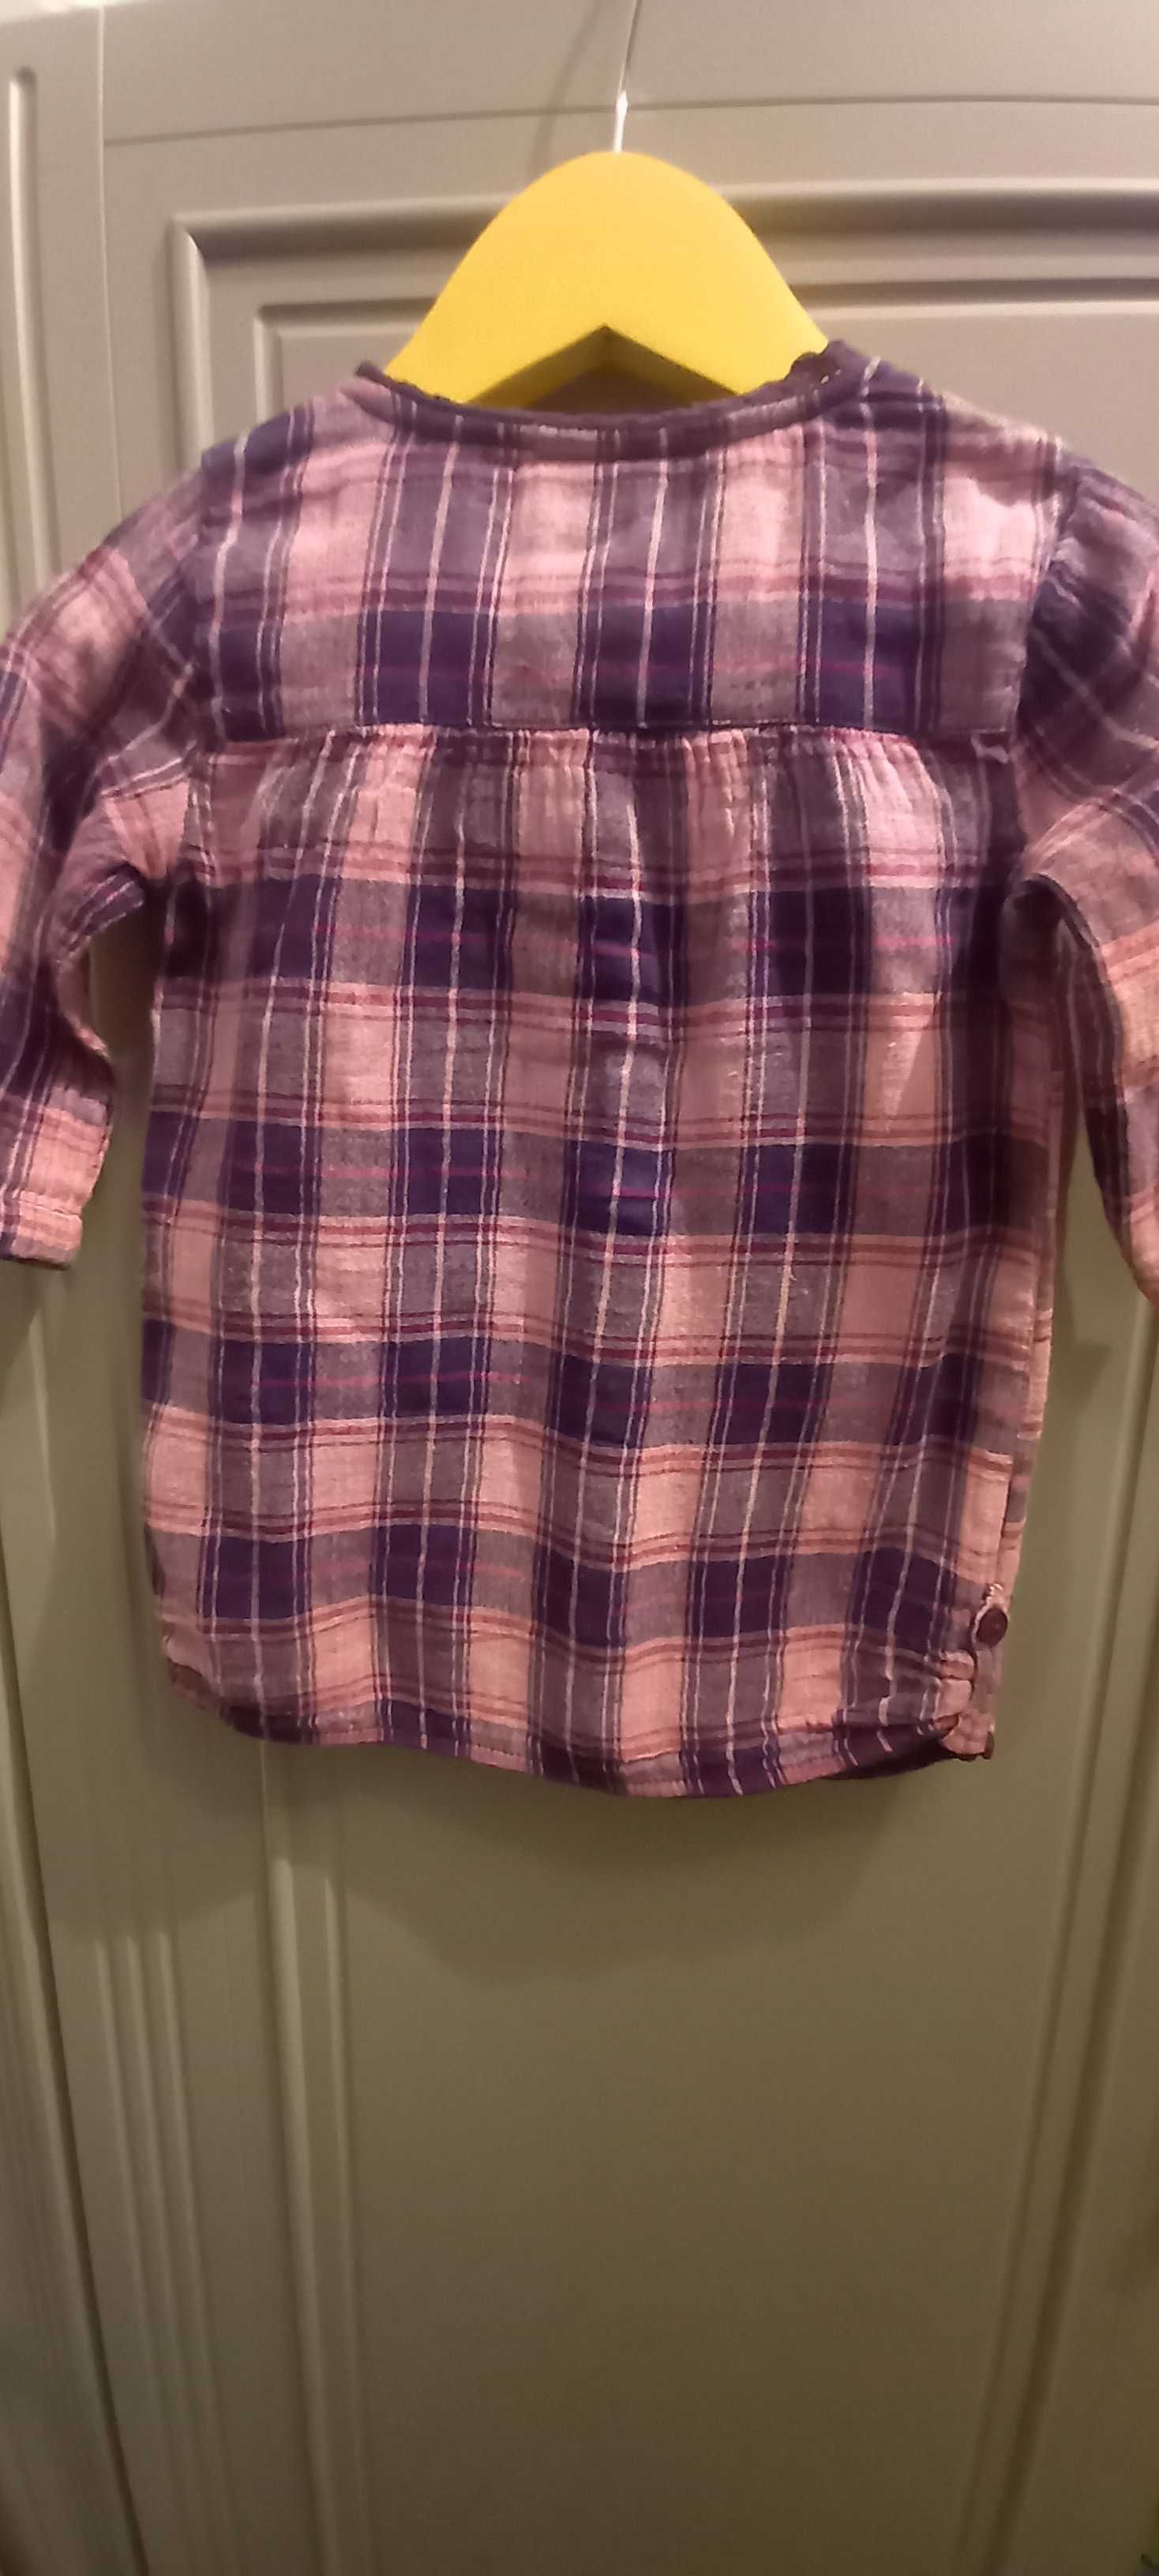 ROZPINANA bluzka koszulowa-tunika dla dziewczynki. 86 cm.